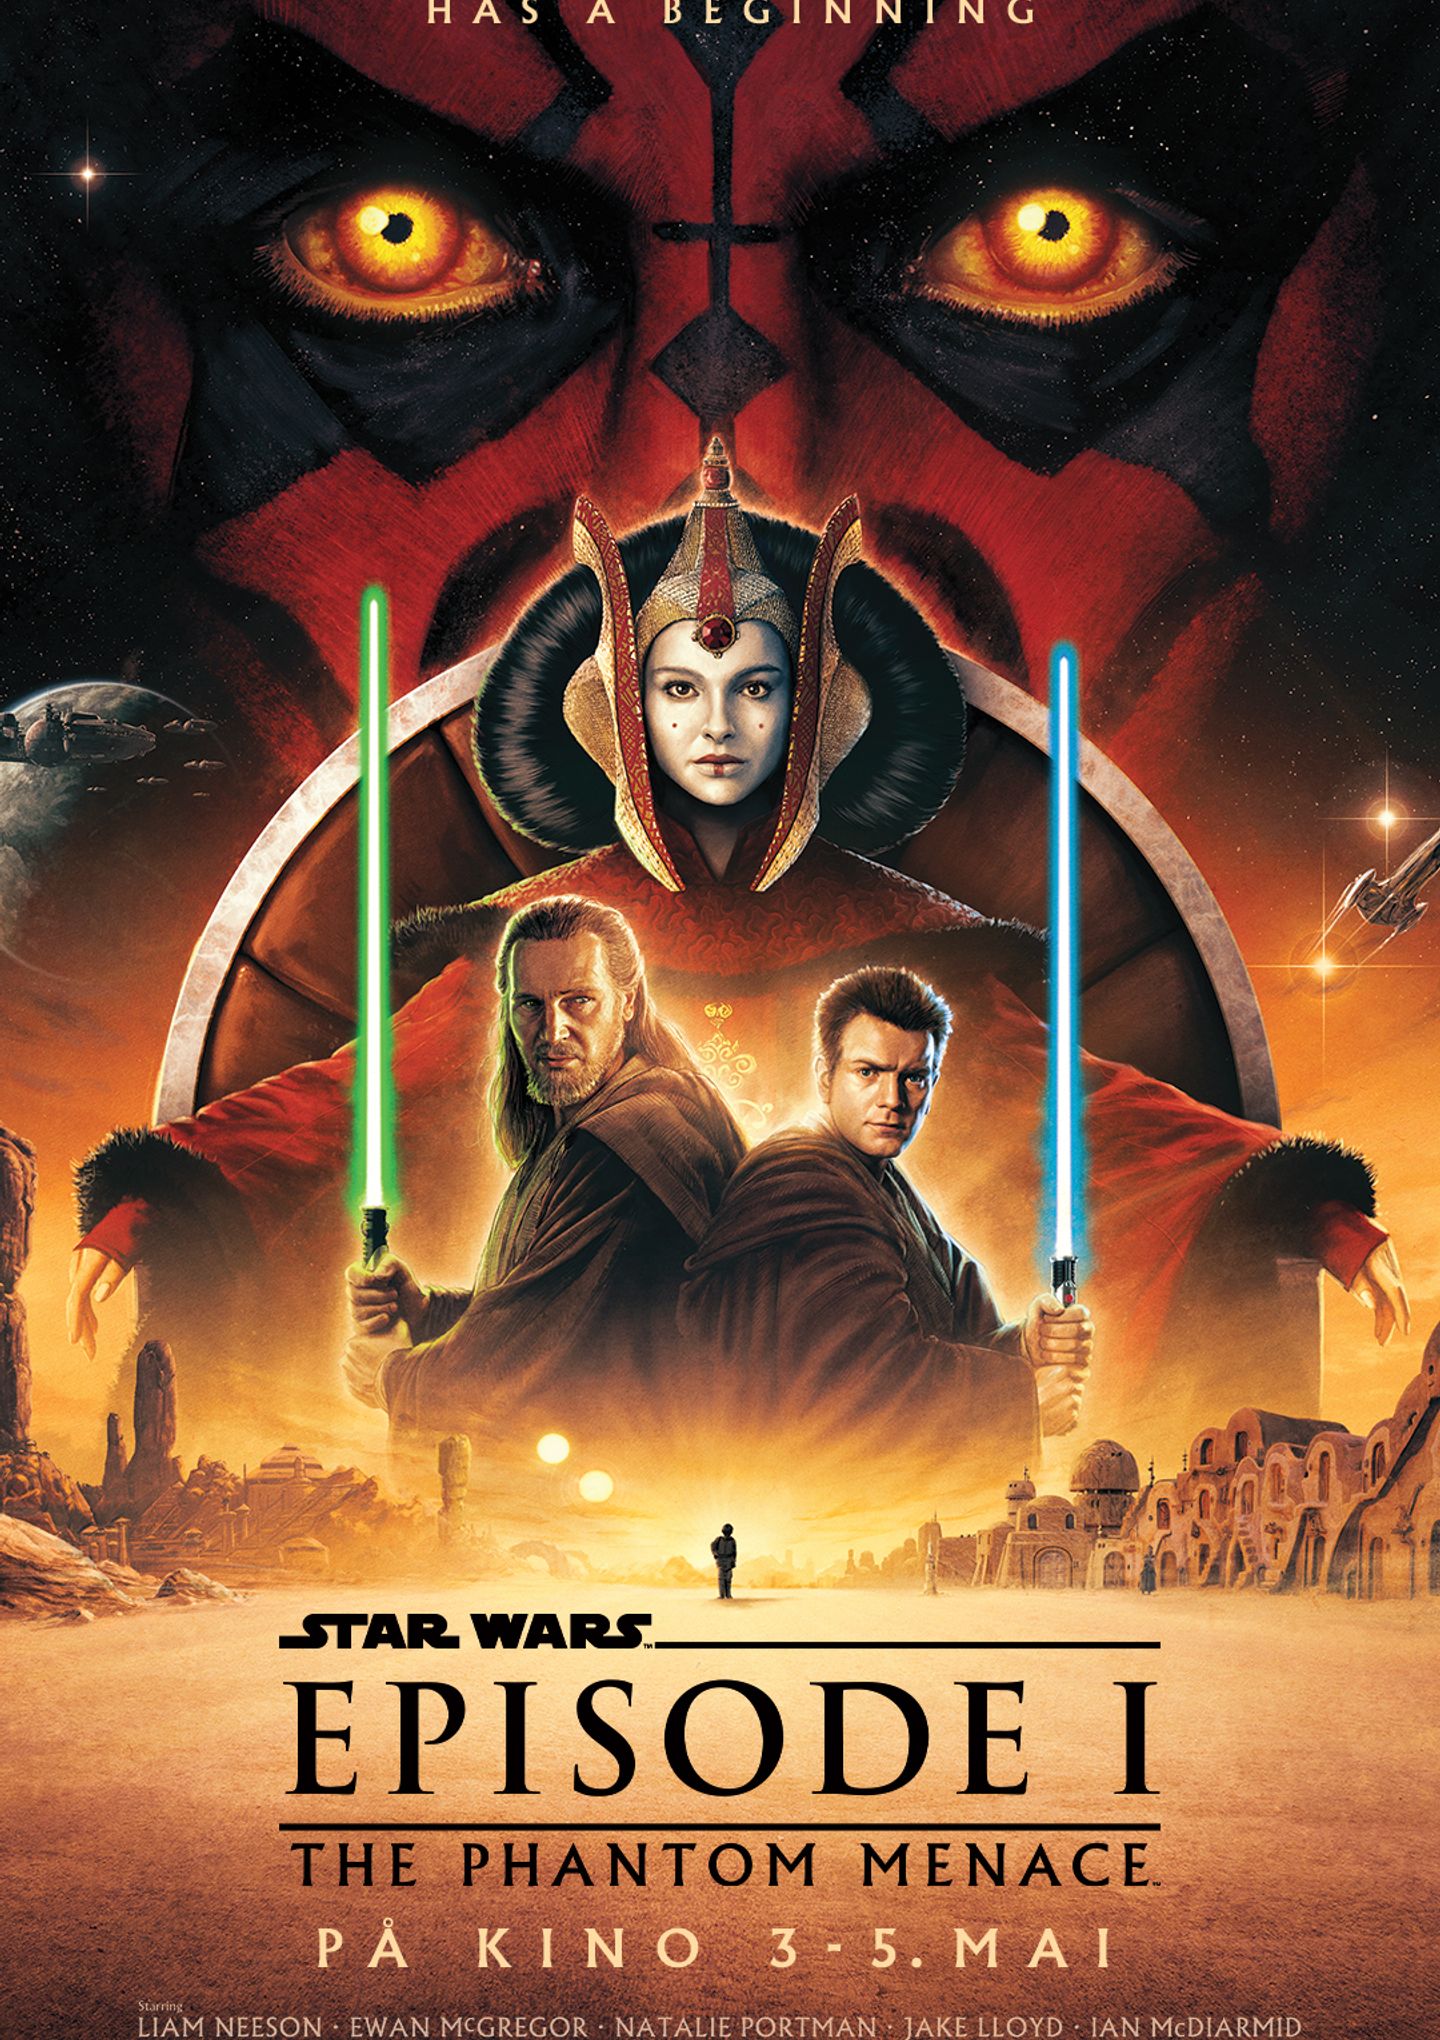 Plakat for 'Star Wars Episode 1: The Phantom Menace 25 års jubileum'